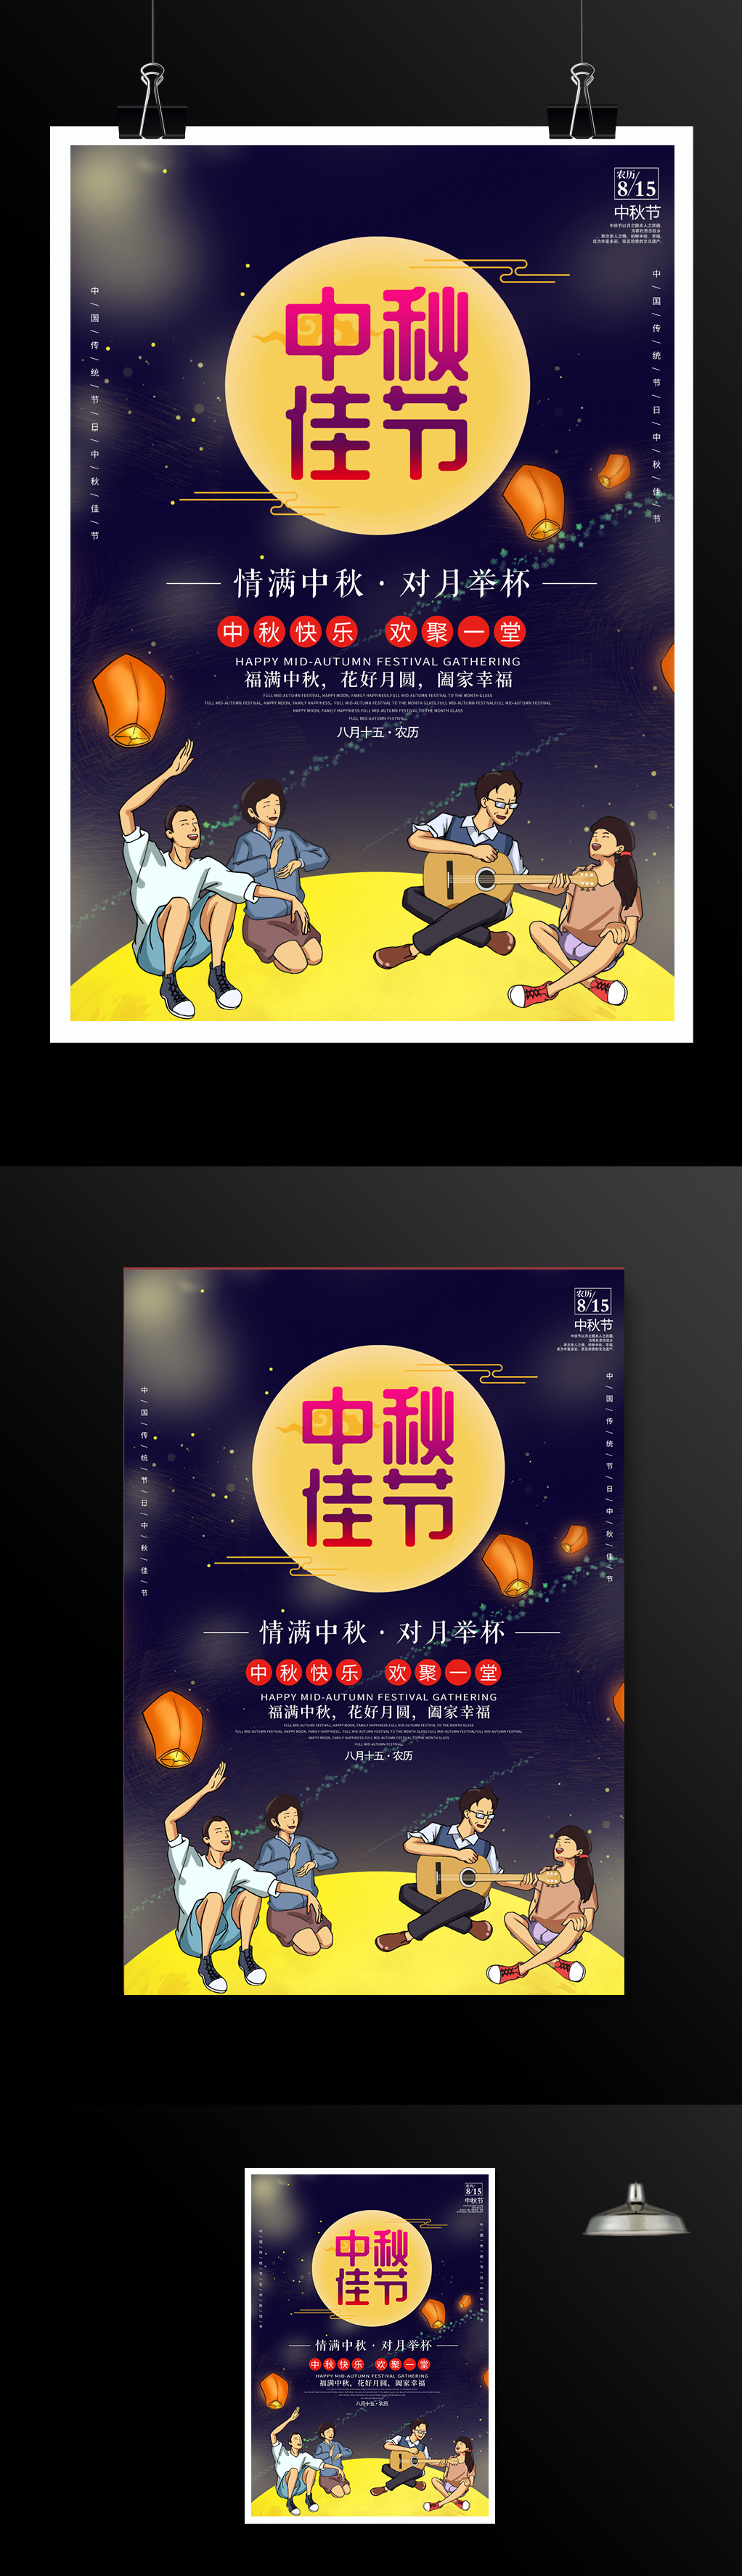 中秋佳节宣传促销海报